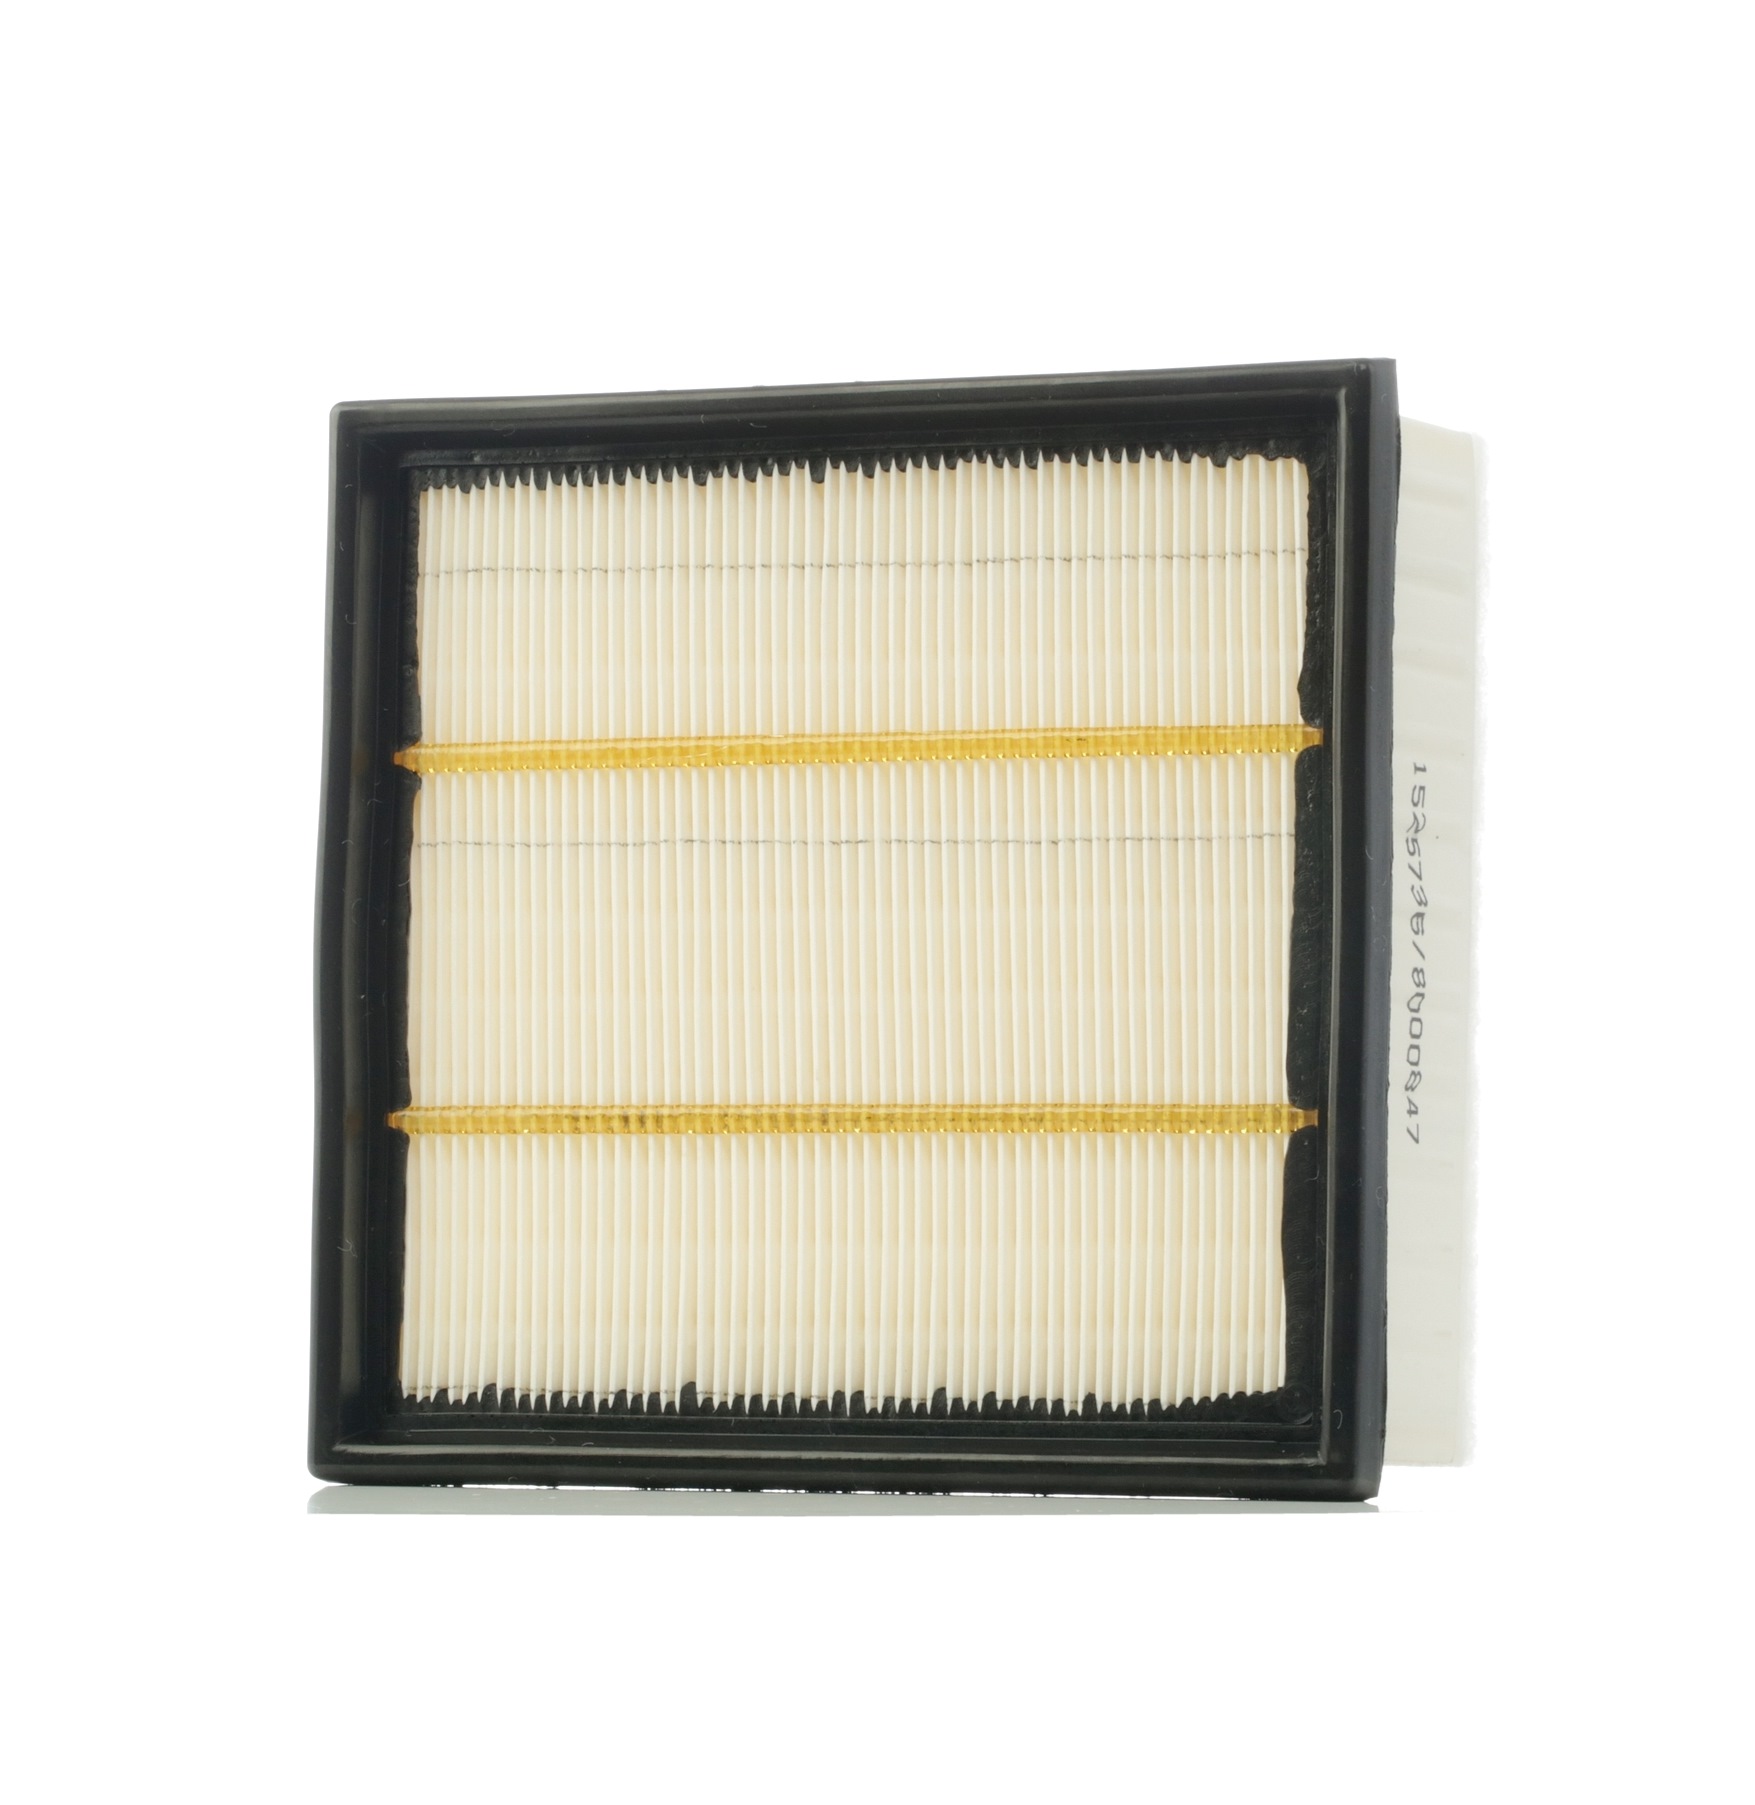 RIDEX 8A0158 oryginalne ALFA ROMEO Filtr powietrza 63.0[mm], 202.5[mm], 213.0[mm], Filtr powietrza, z filtrem wstępnym, dla zastosowań przy dużym zapyleniu